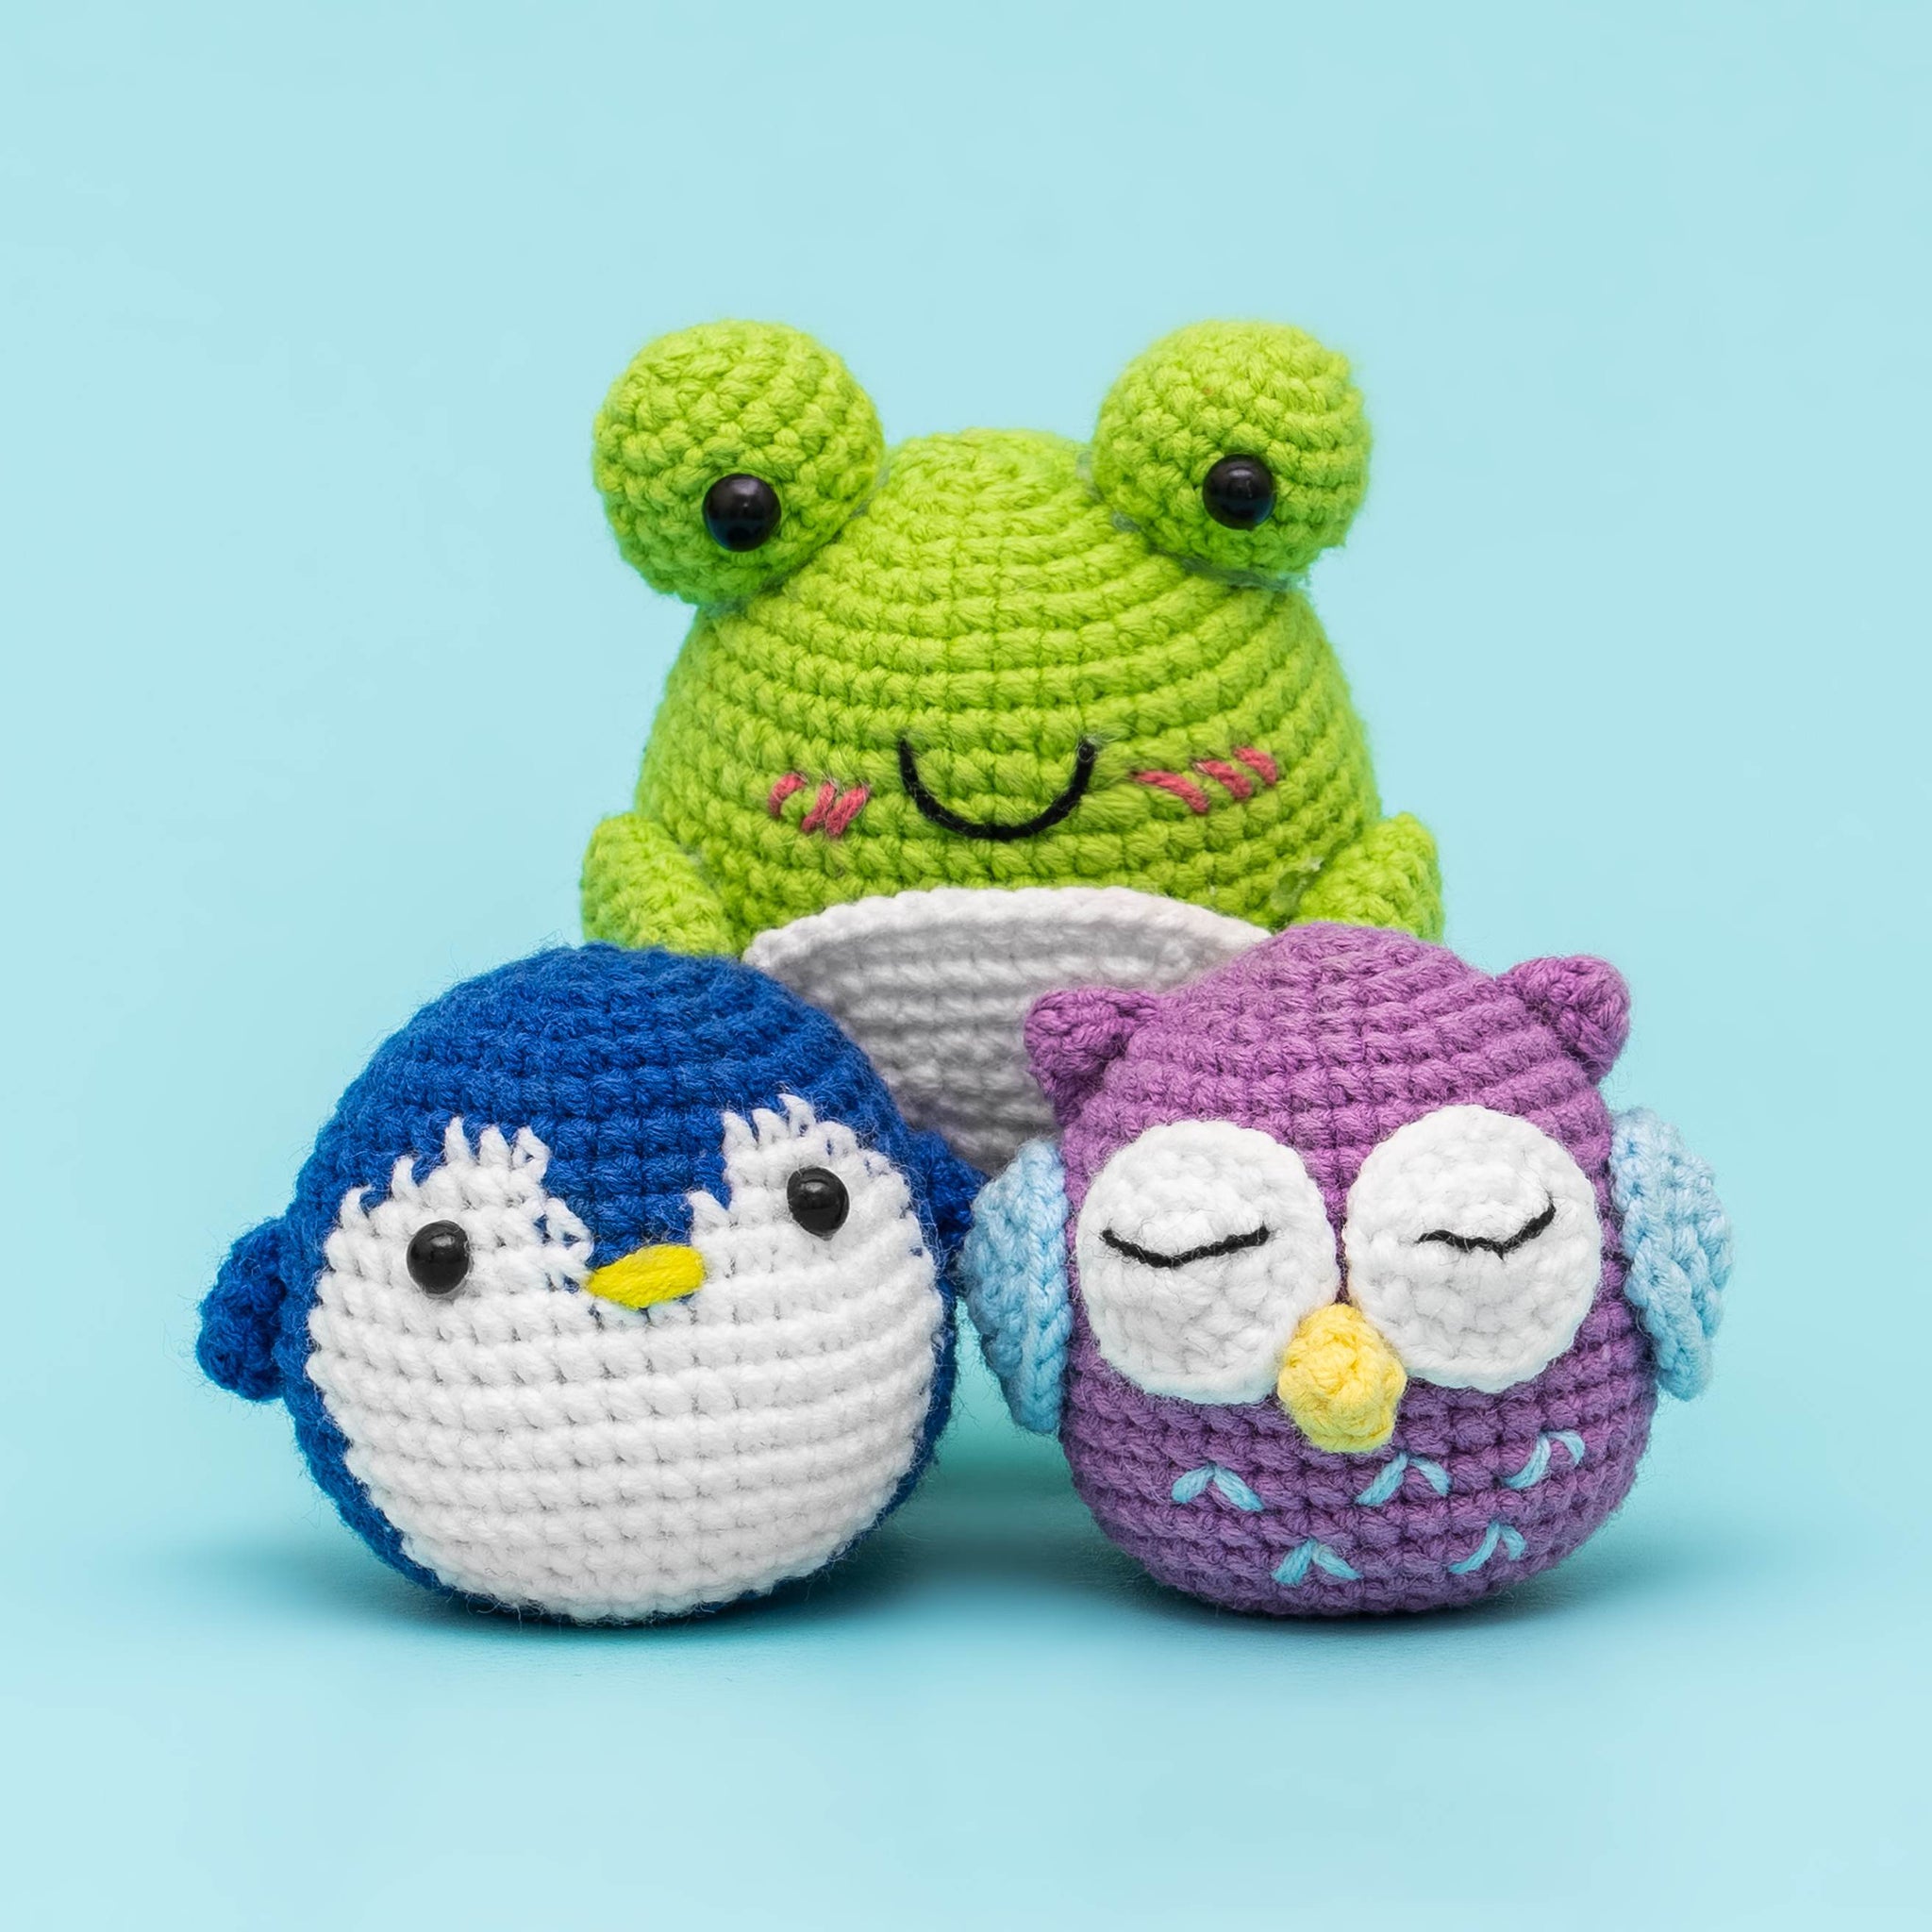 Hicrochet Kit For Beginners, 3 Pattern Animals-Owl, Penguin, Frog, Kni